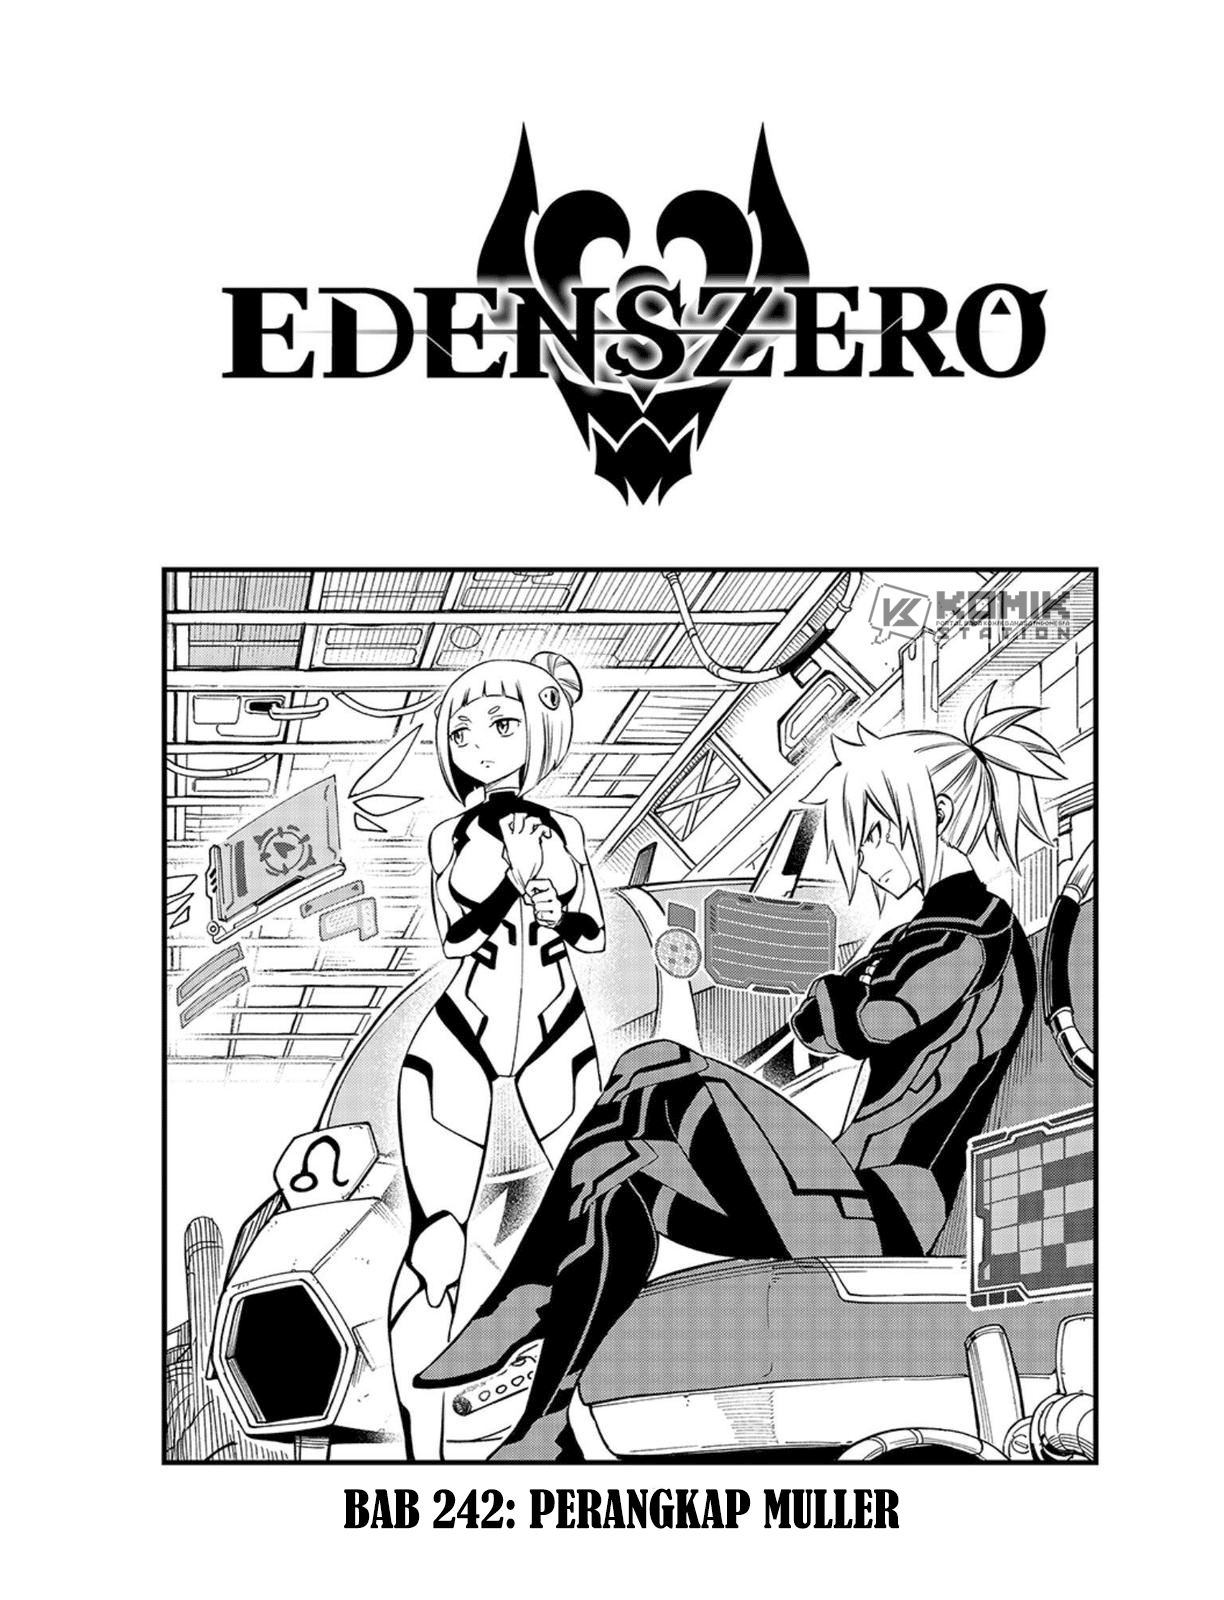 Eden’s Zero Chapter 242